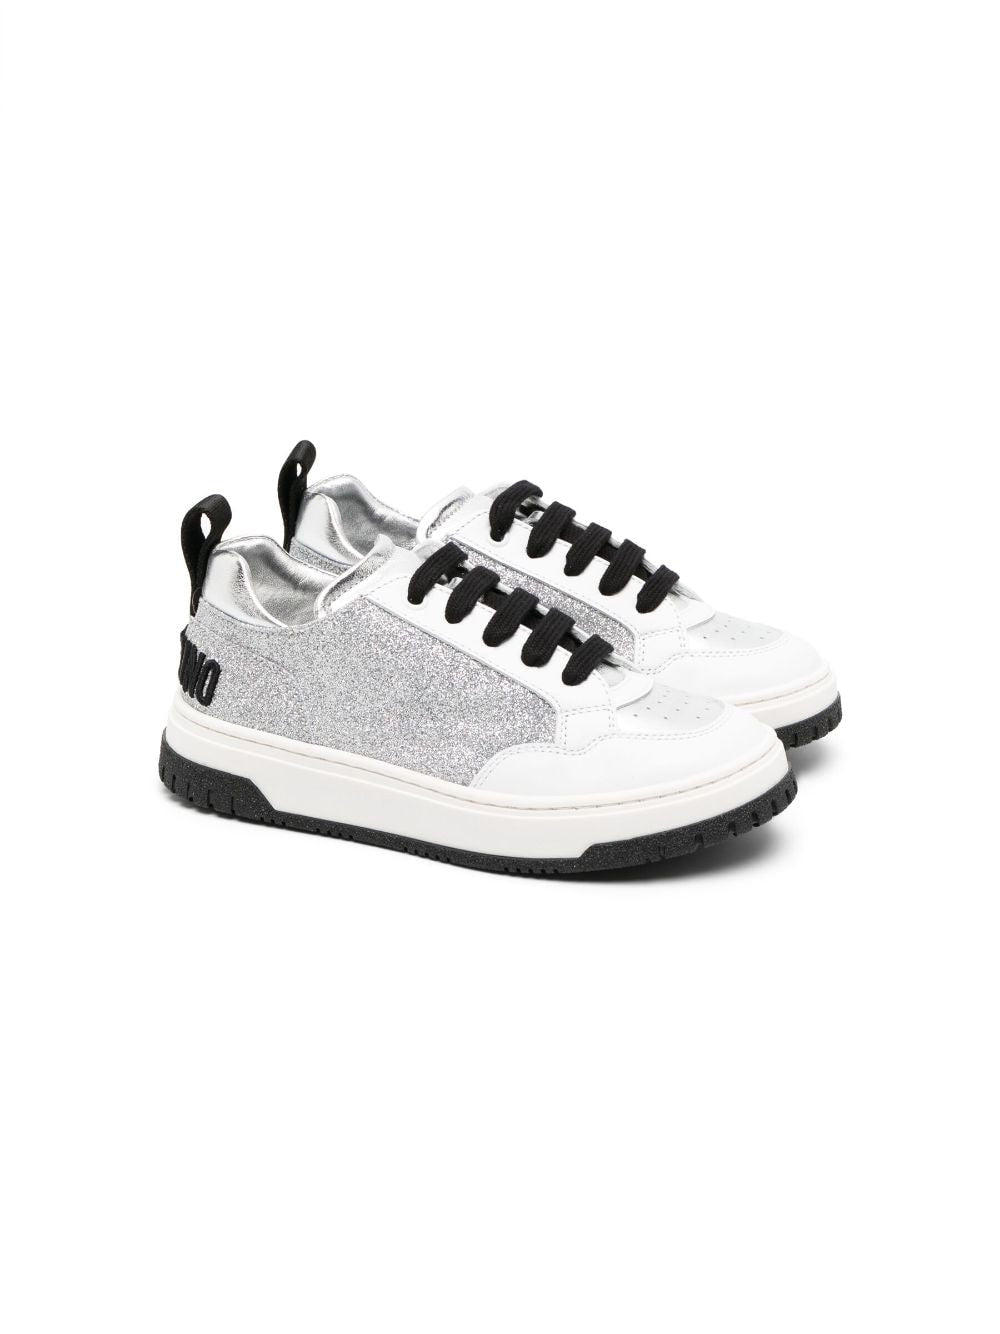 Sneakers bambina argento e bianche con dettagli neri